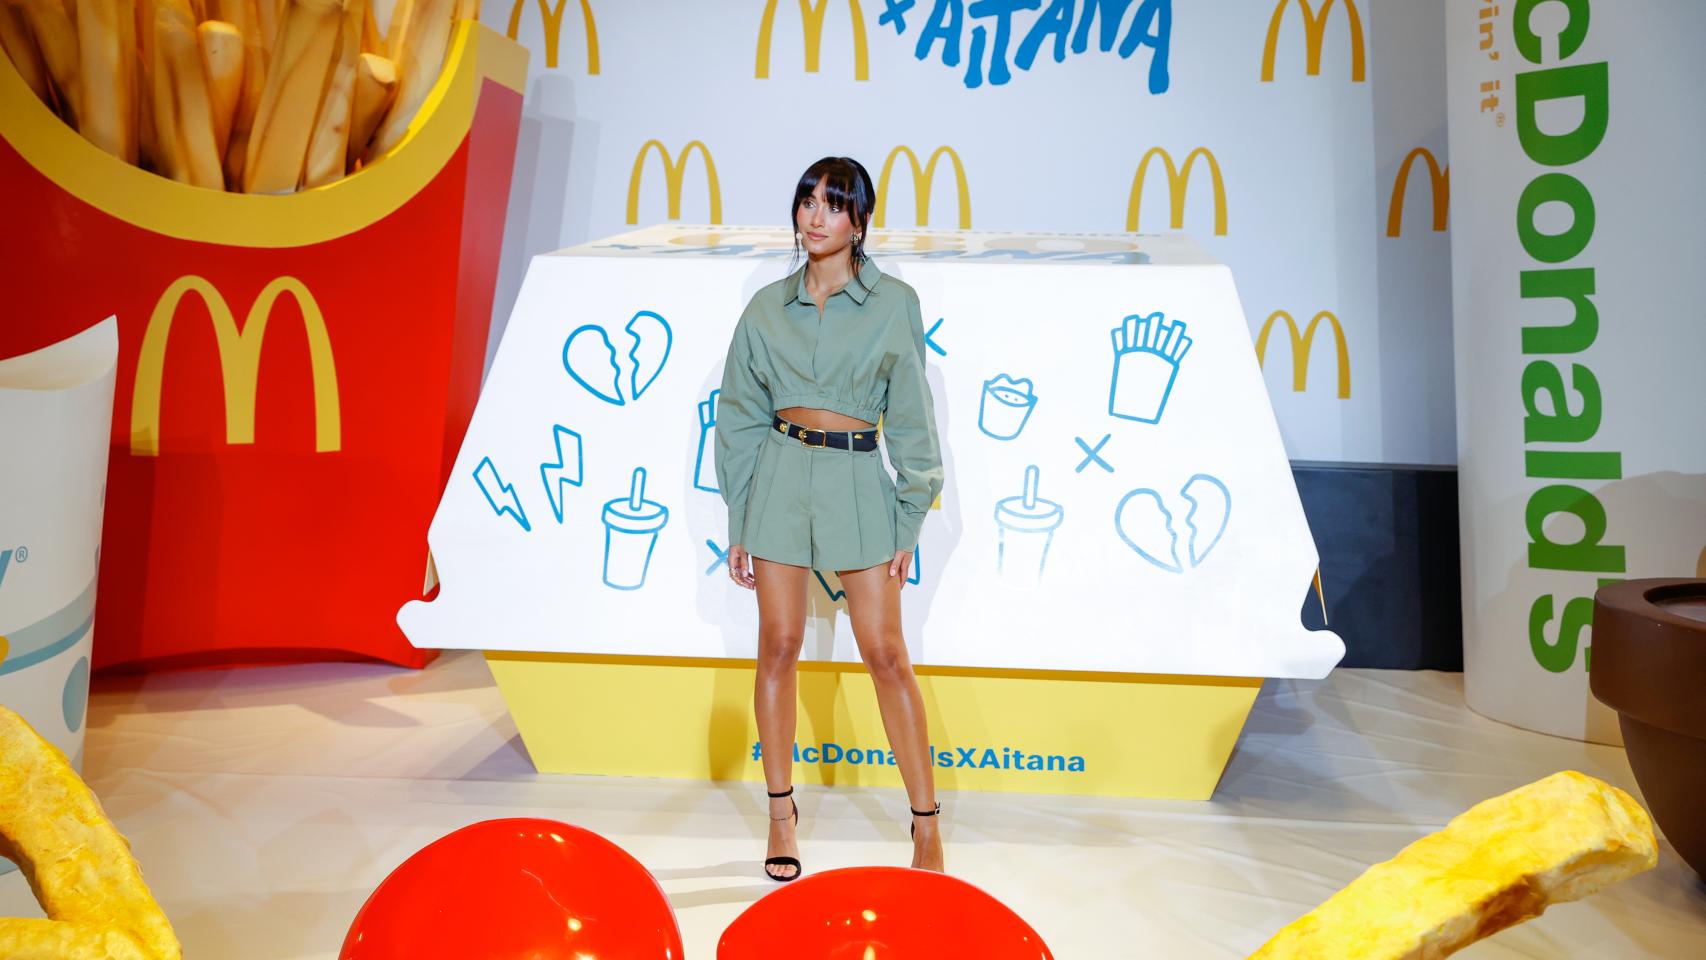 Aitana Ocaña tiene su propio menú n McDonald's, valorado en 9,90 euros.